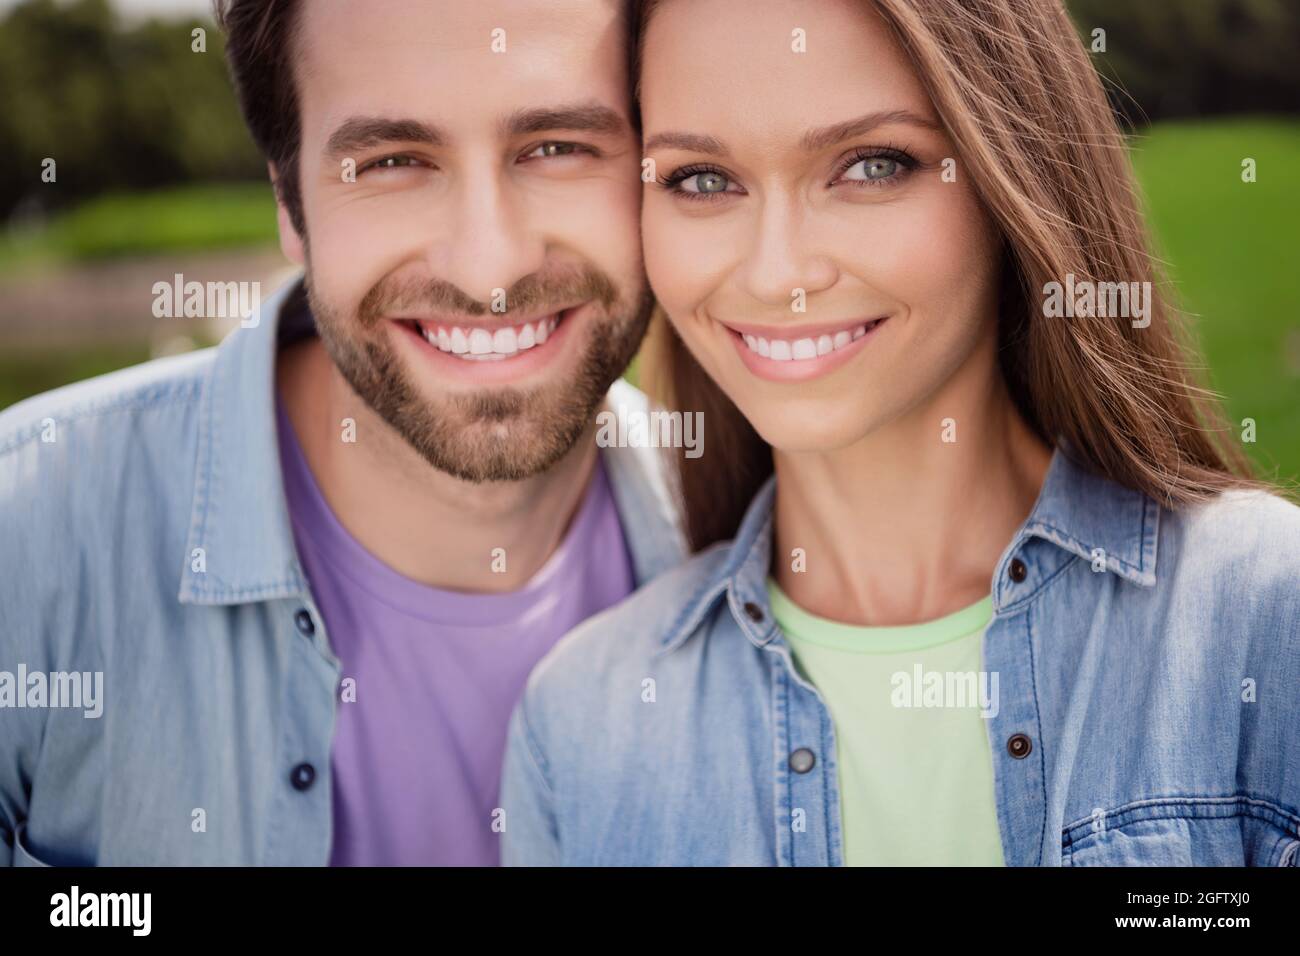 Nahaufnahme Porträt von guter Laune lächelnd schönes Paar Frau und Mann genießen Freizeit im Freien zusammen entspannen Stockfoto